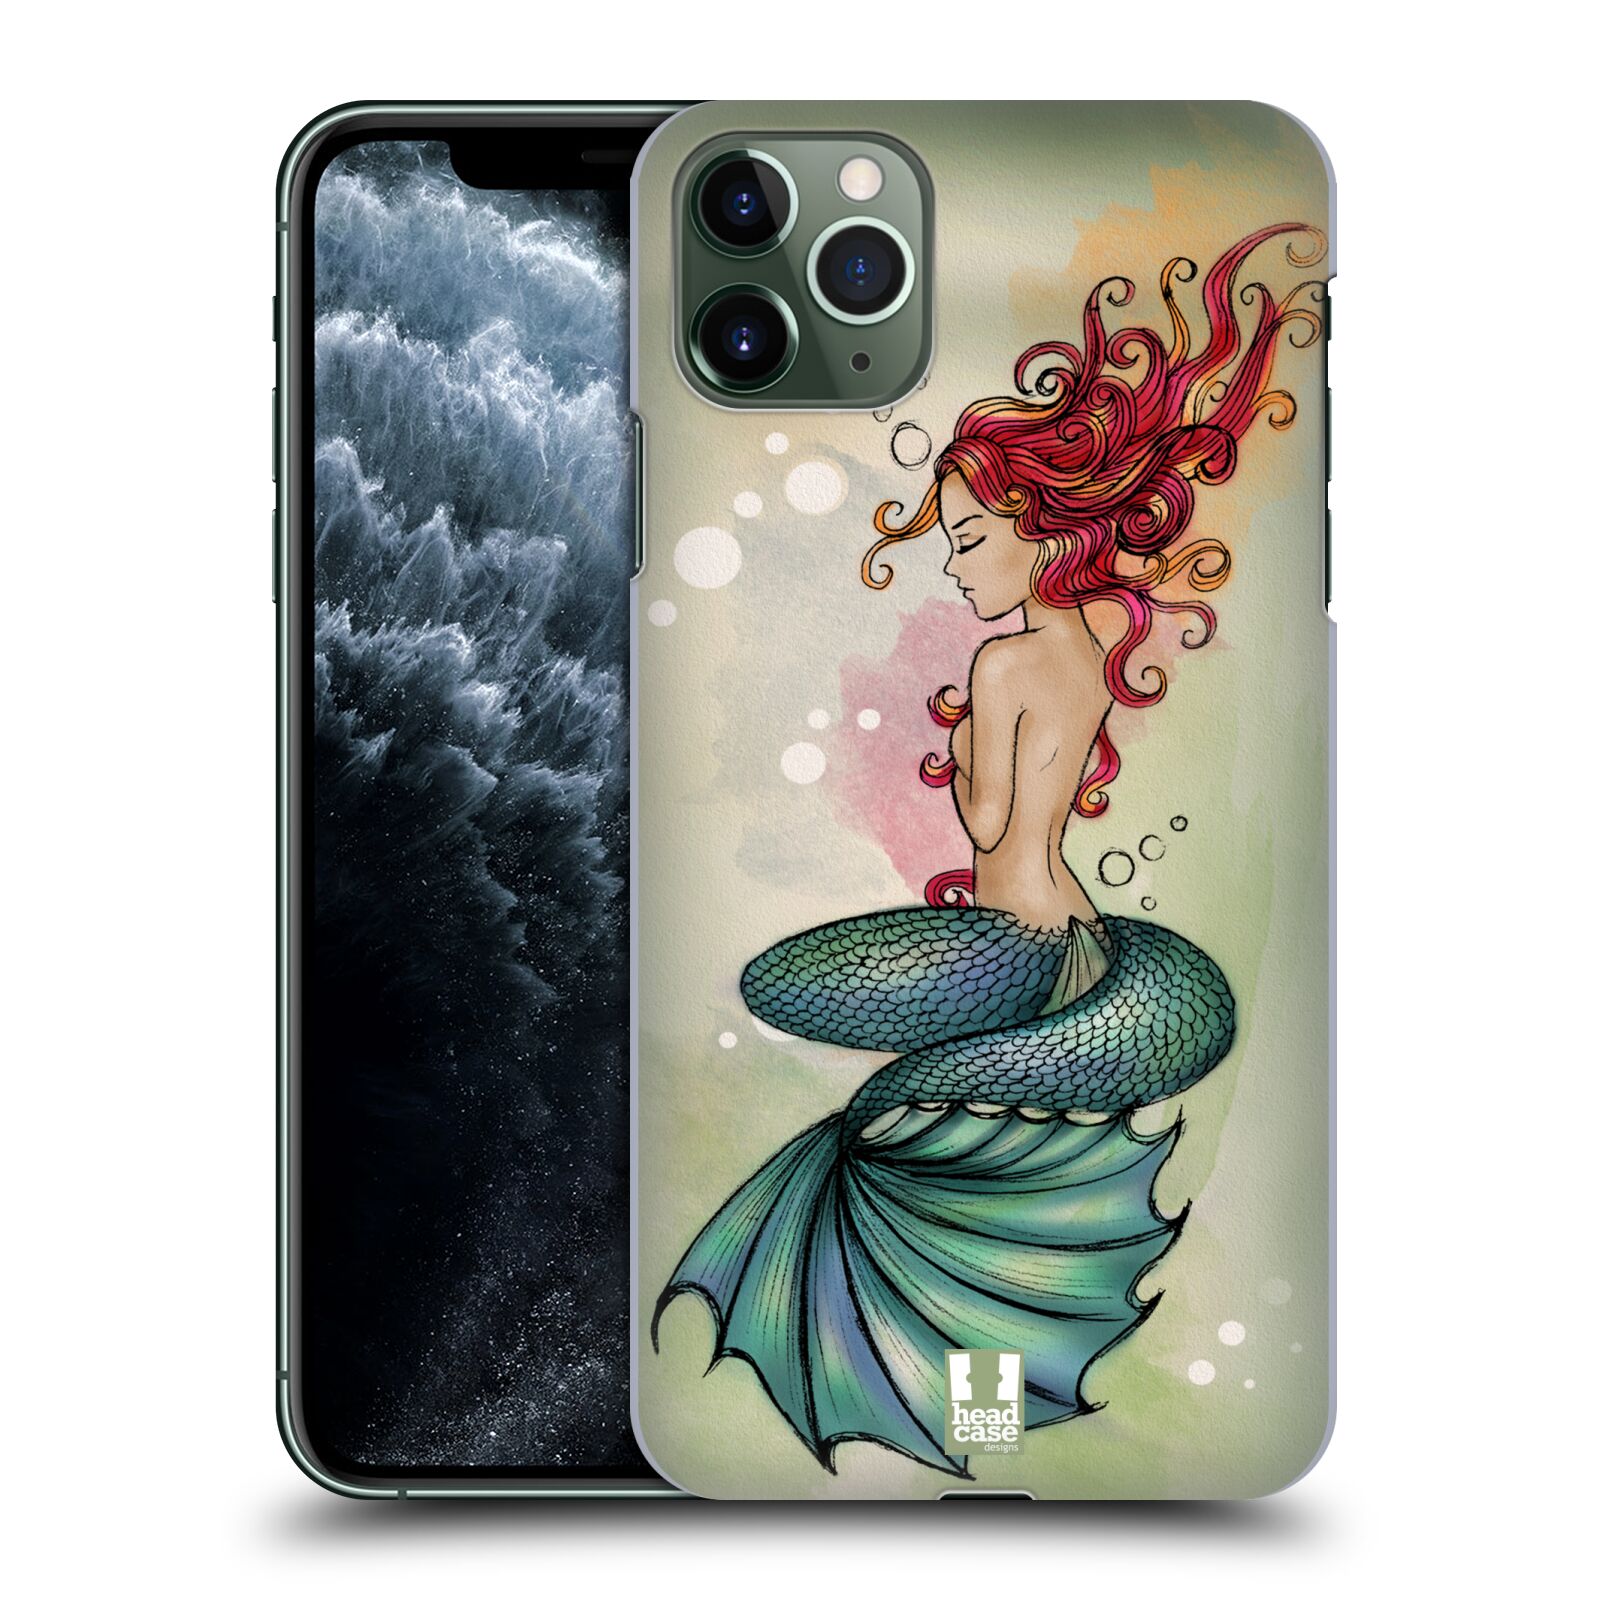 Pouzdro na mobil Apple Iphone 11 PRO MAX - HEAD CASE - vzor Mořská víla ZELENÁ